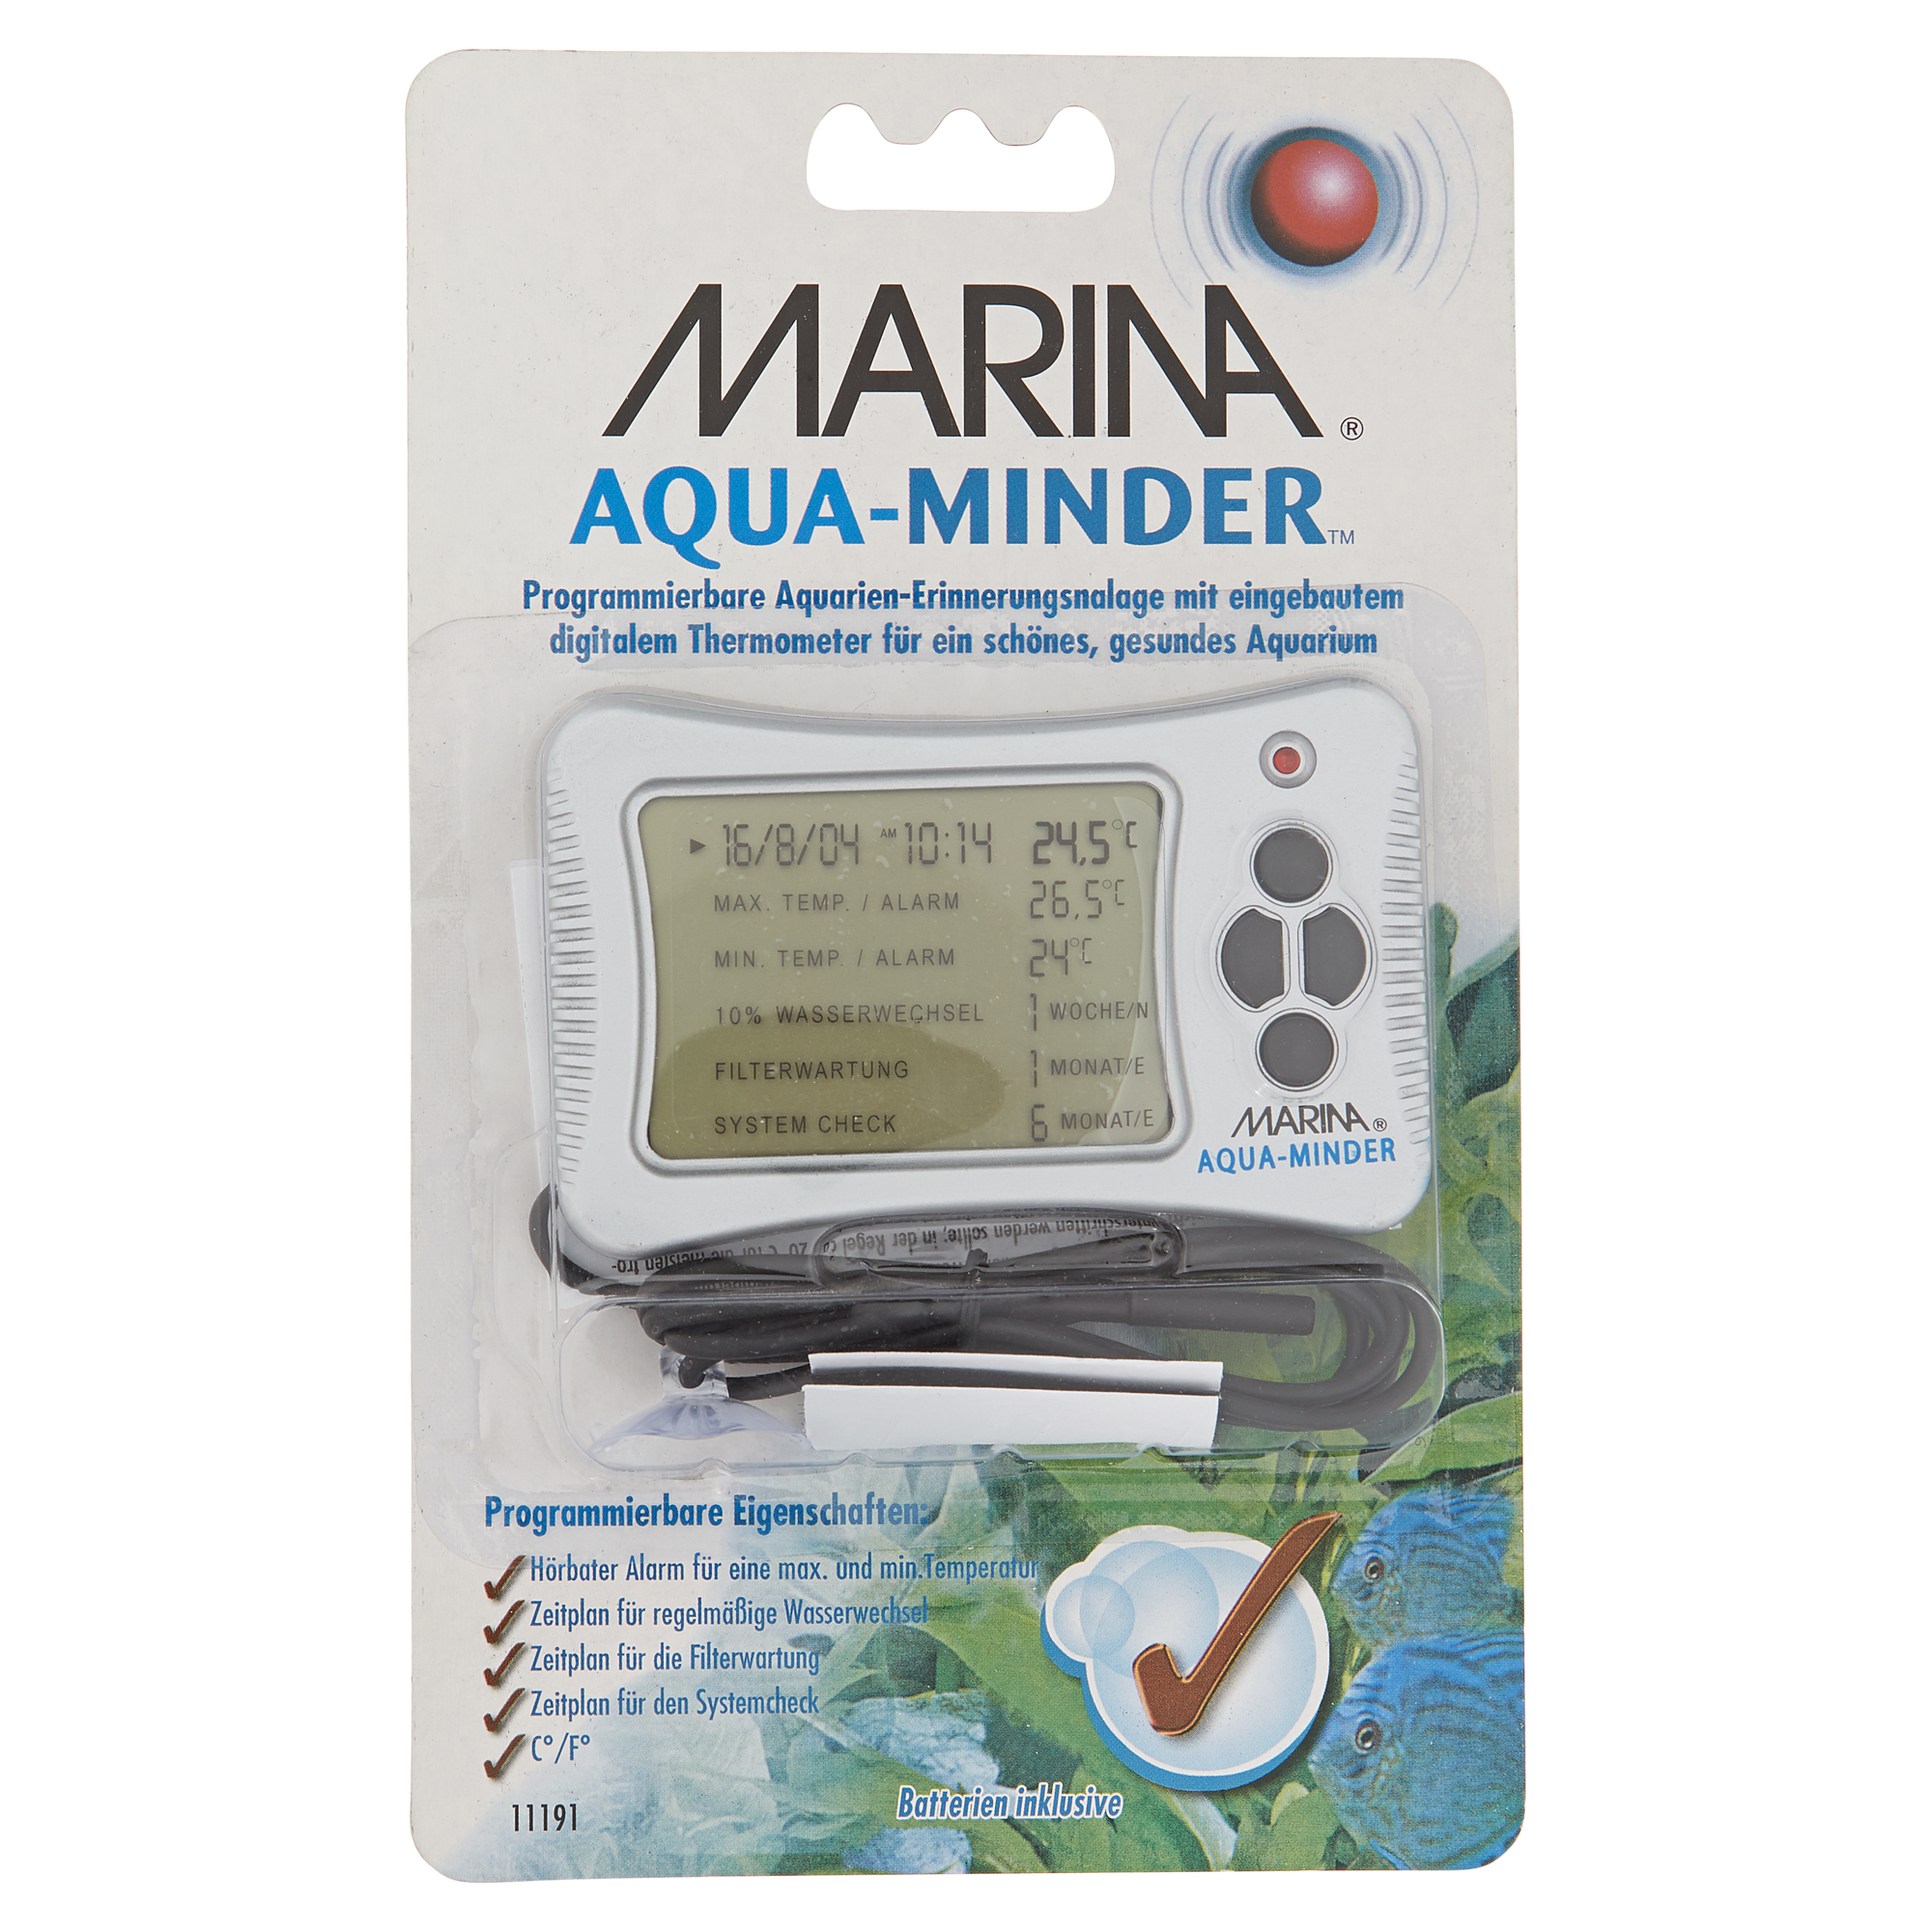 Aquarien-Erinnerungsanlage 'Marina' programmierbar + product picture